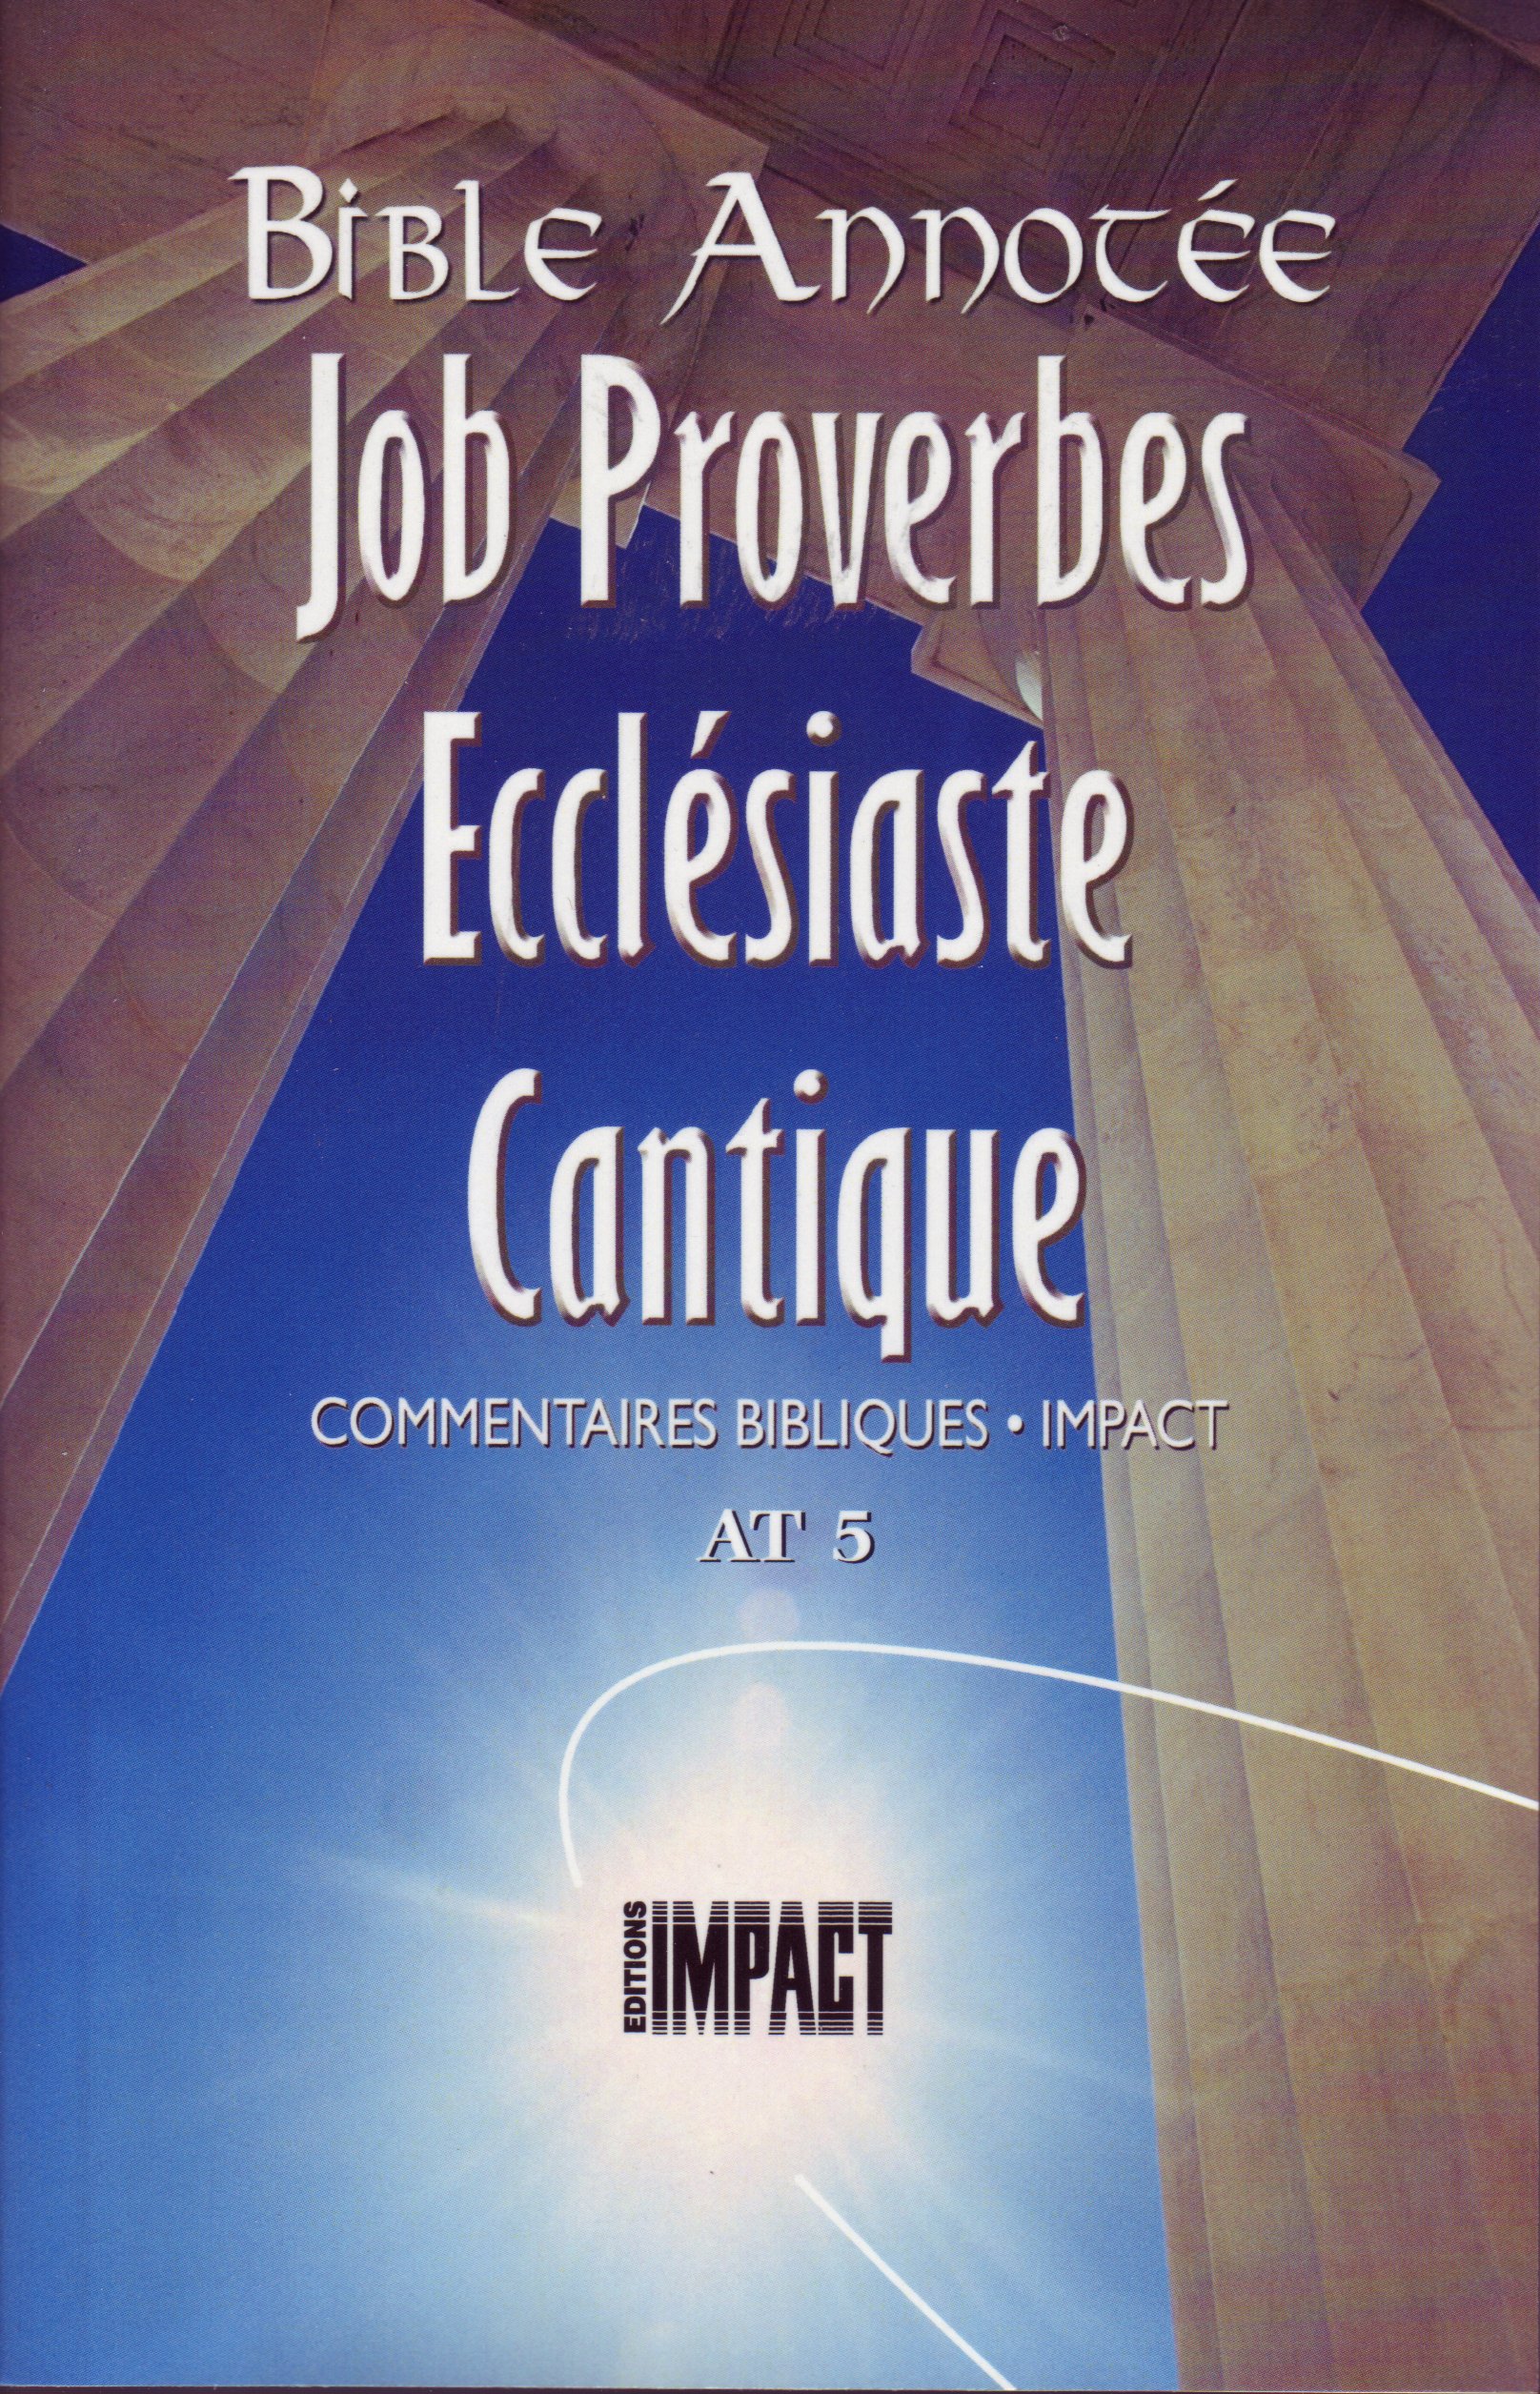 Bible Annotée - Job Proverbes Ecclésiate Cantiques (La) - Commentaires bibliques Impact AT 5